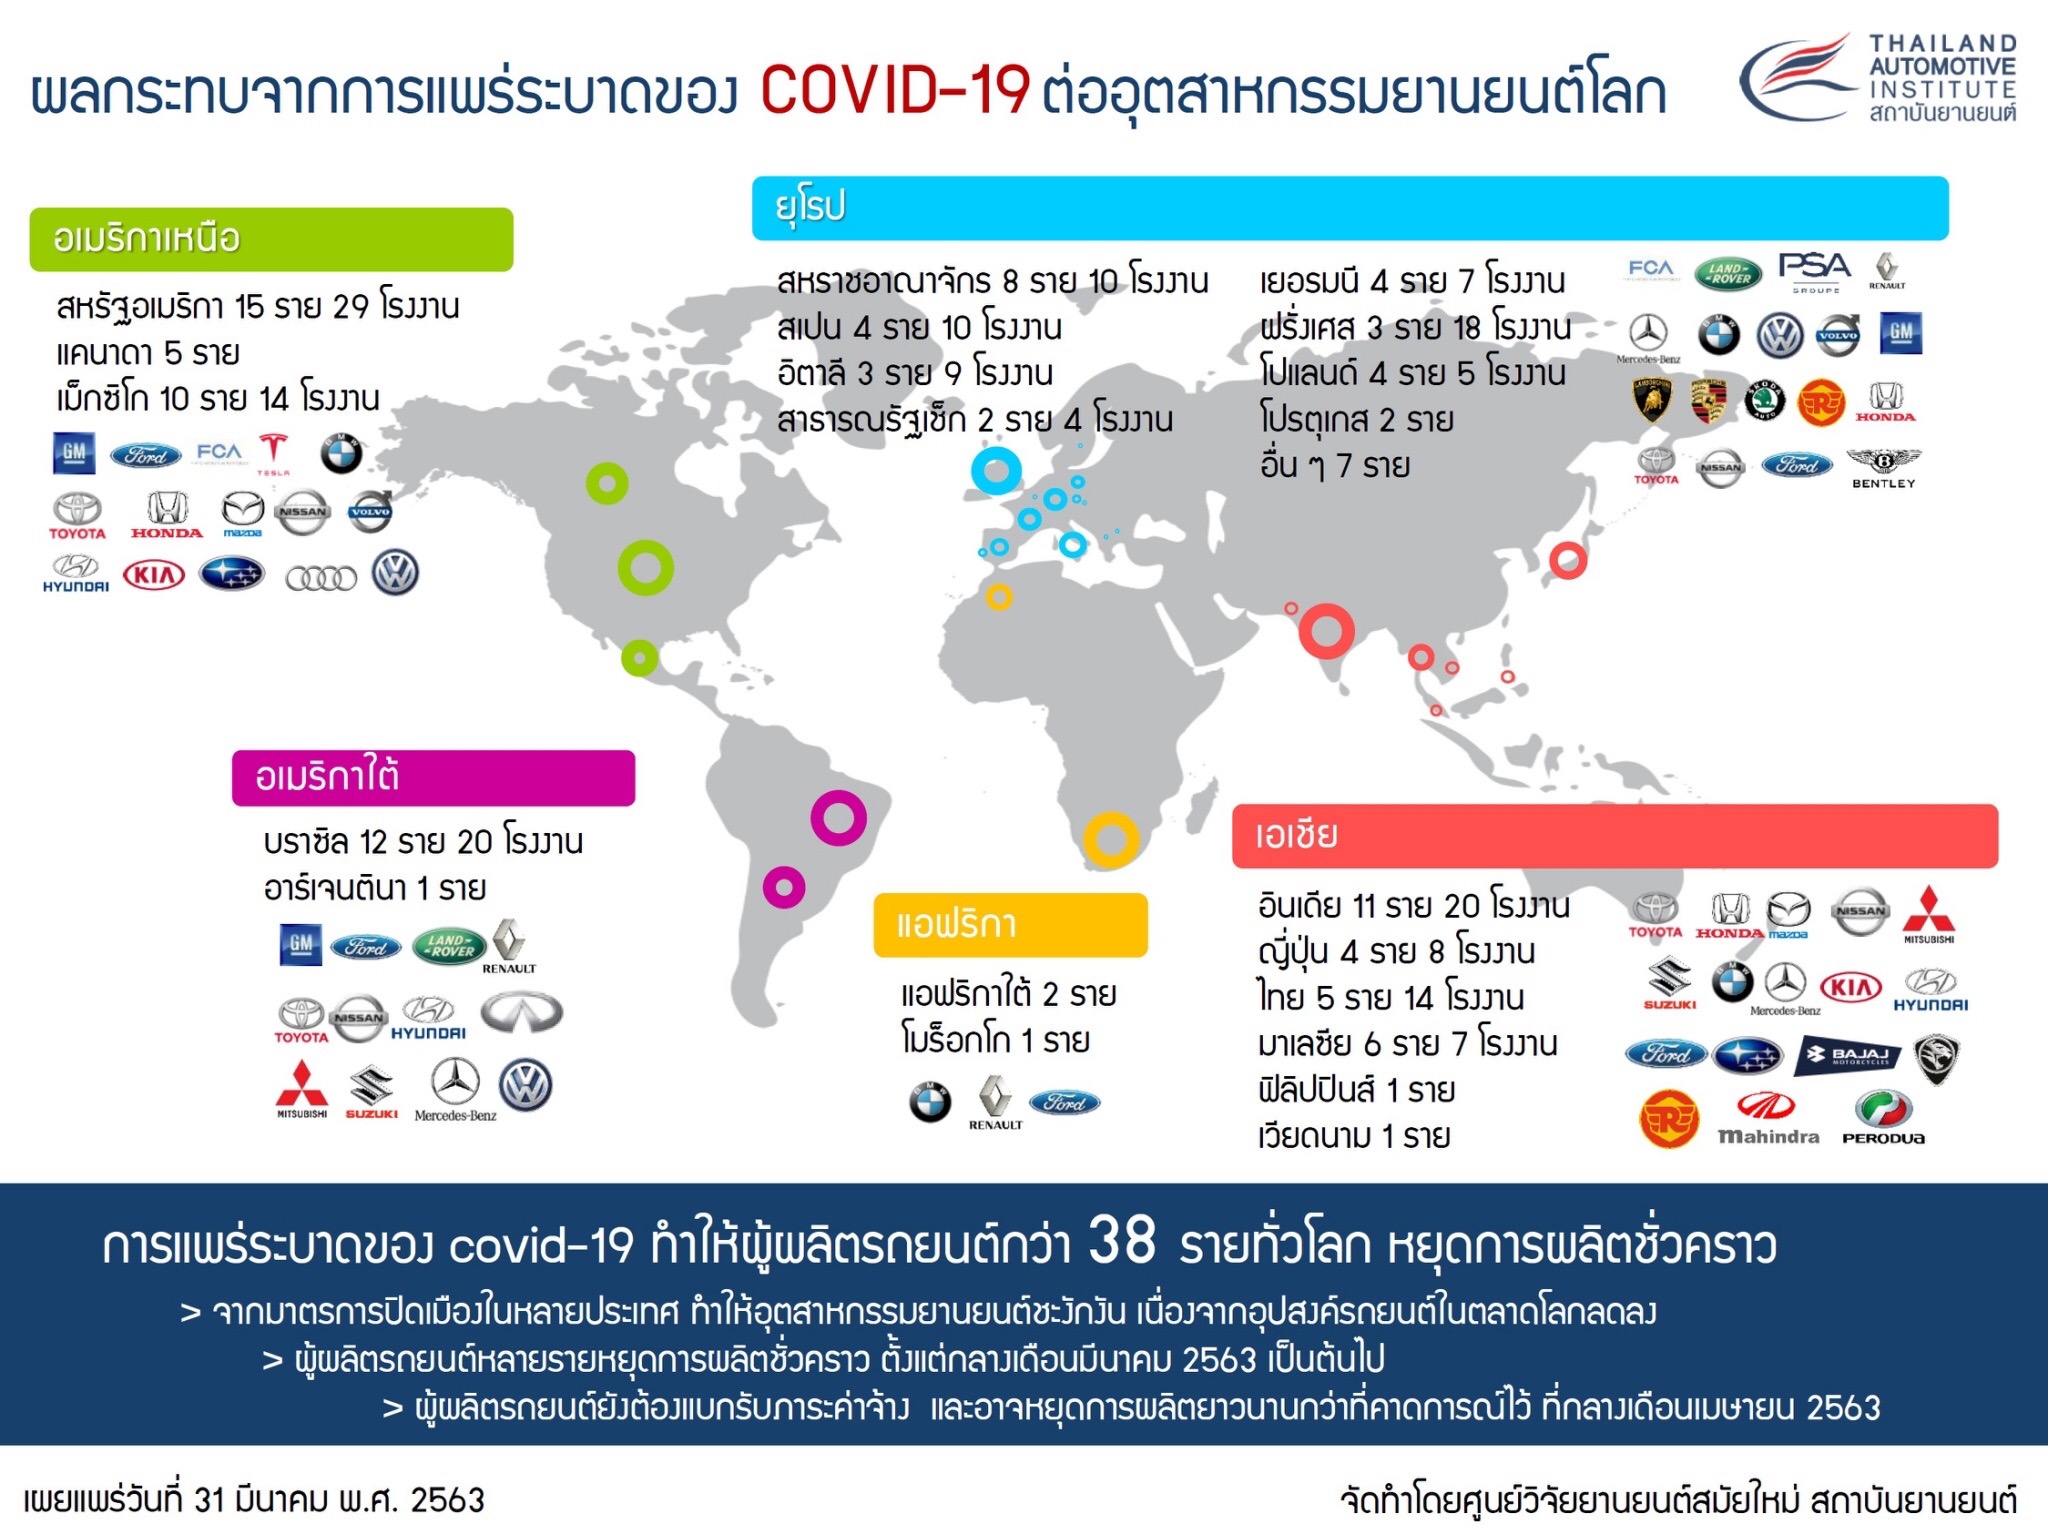 ผลกระทบจาการแพร่ระบาดของ COVID-19 ต่ออุตสาหกรรมยานยนต์โลก